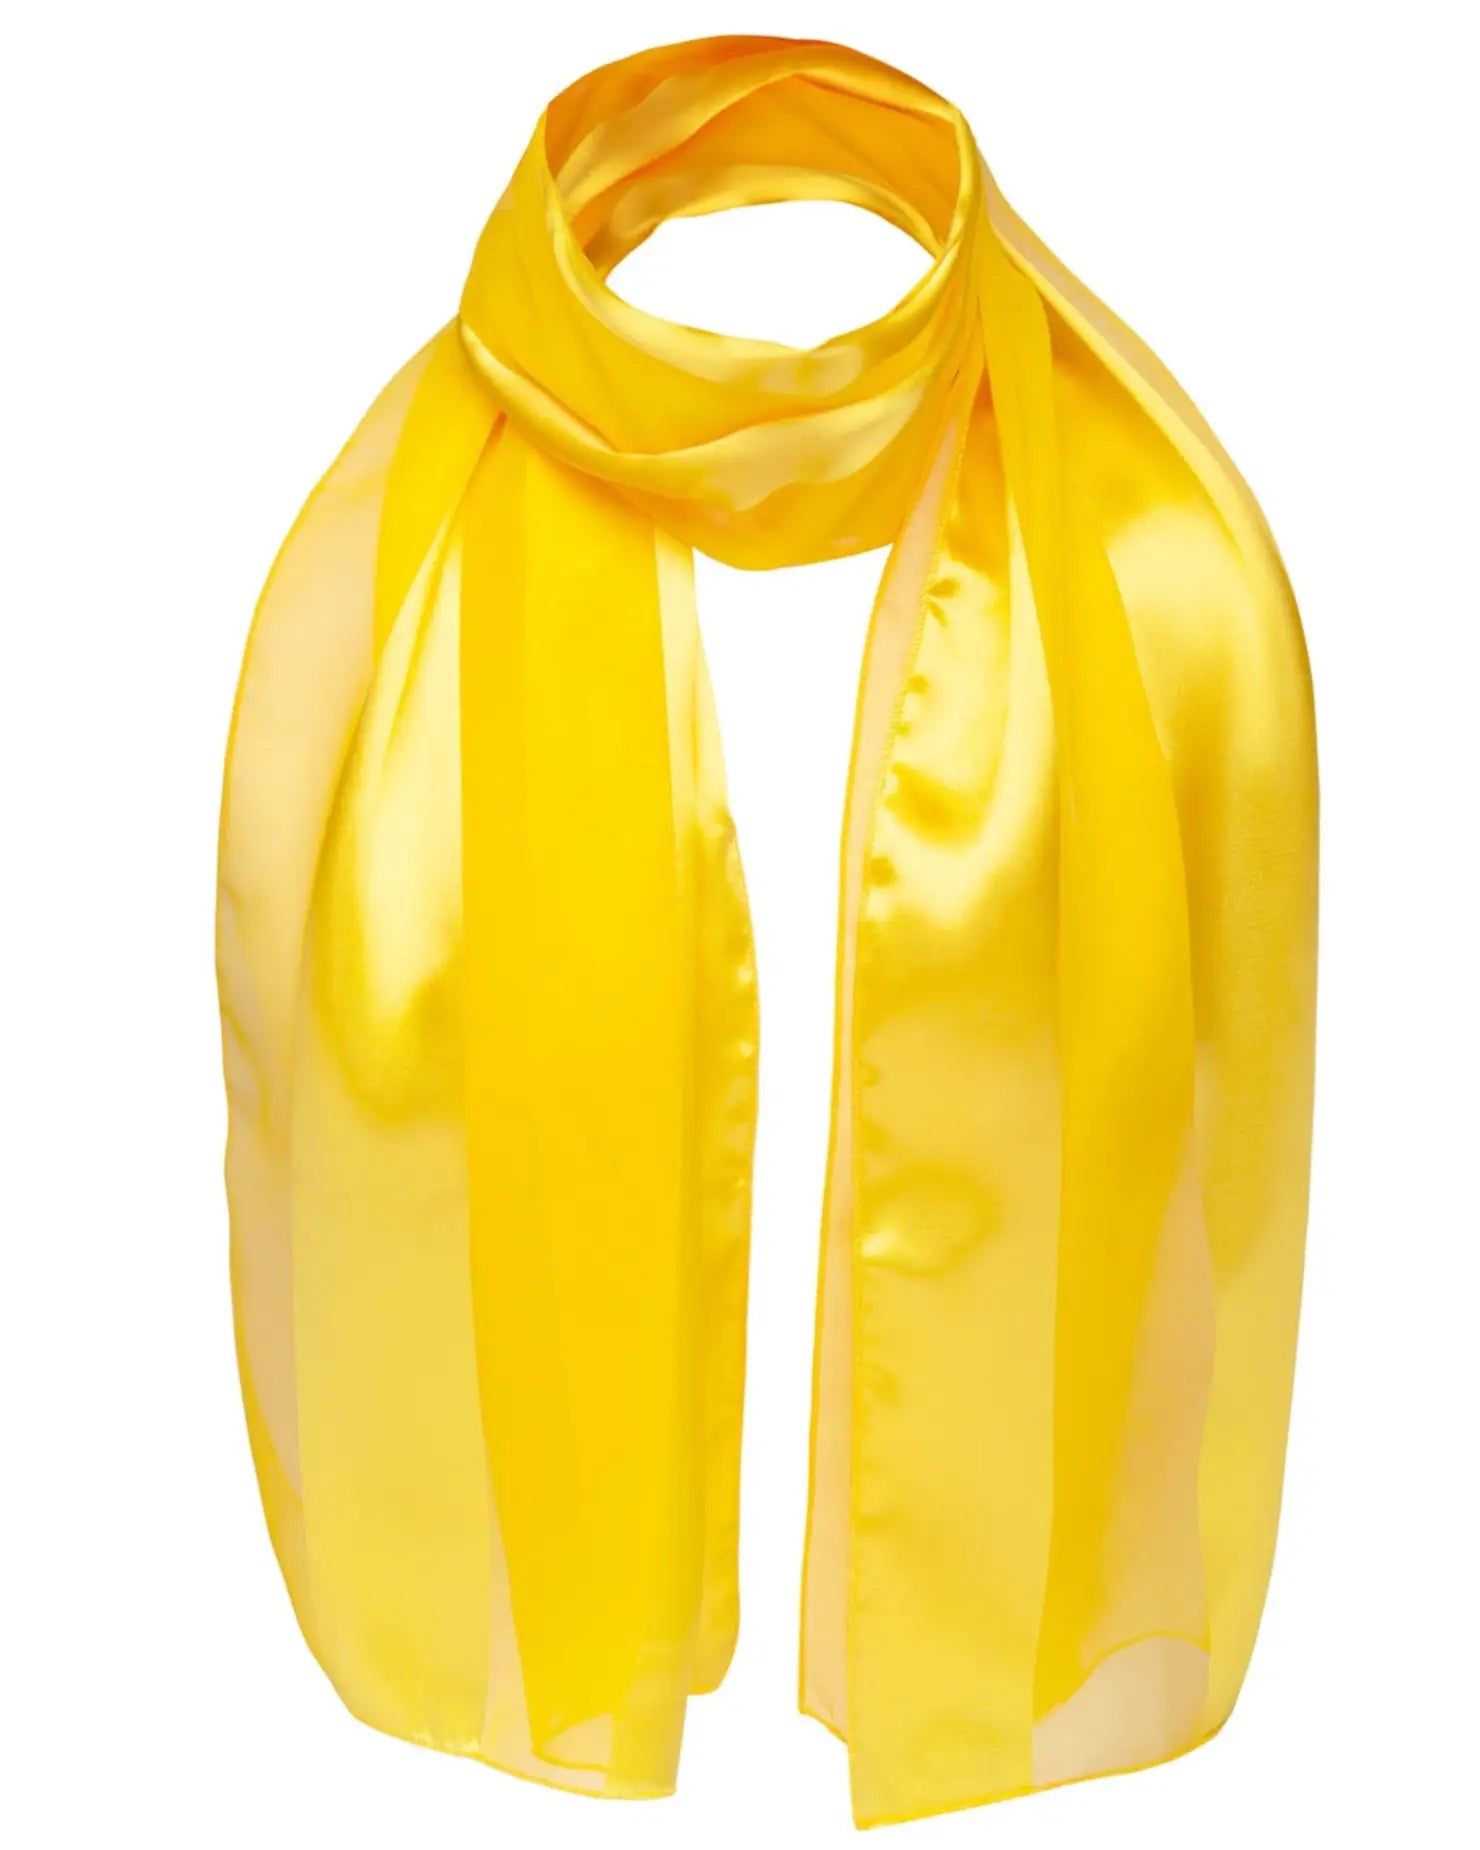 Yellow satin stripe scarf on white background - Solid Shimmering Satin Stripe Scarf.